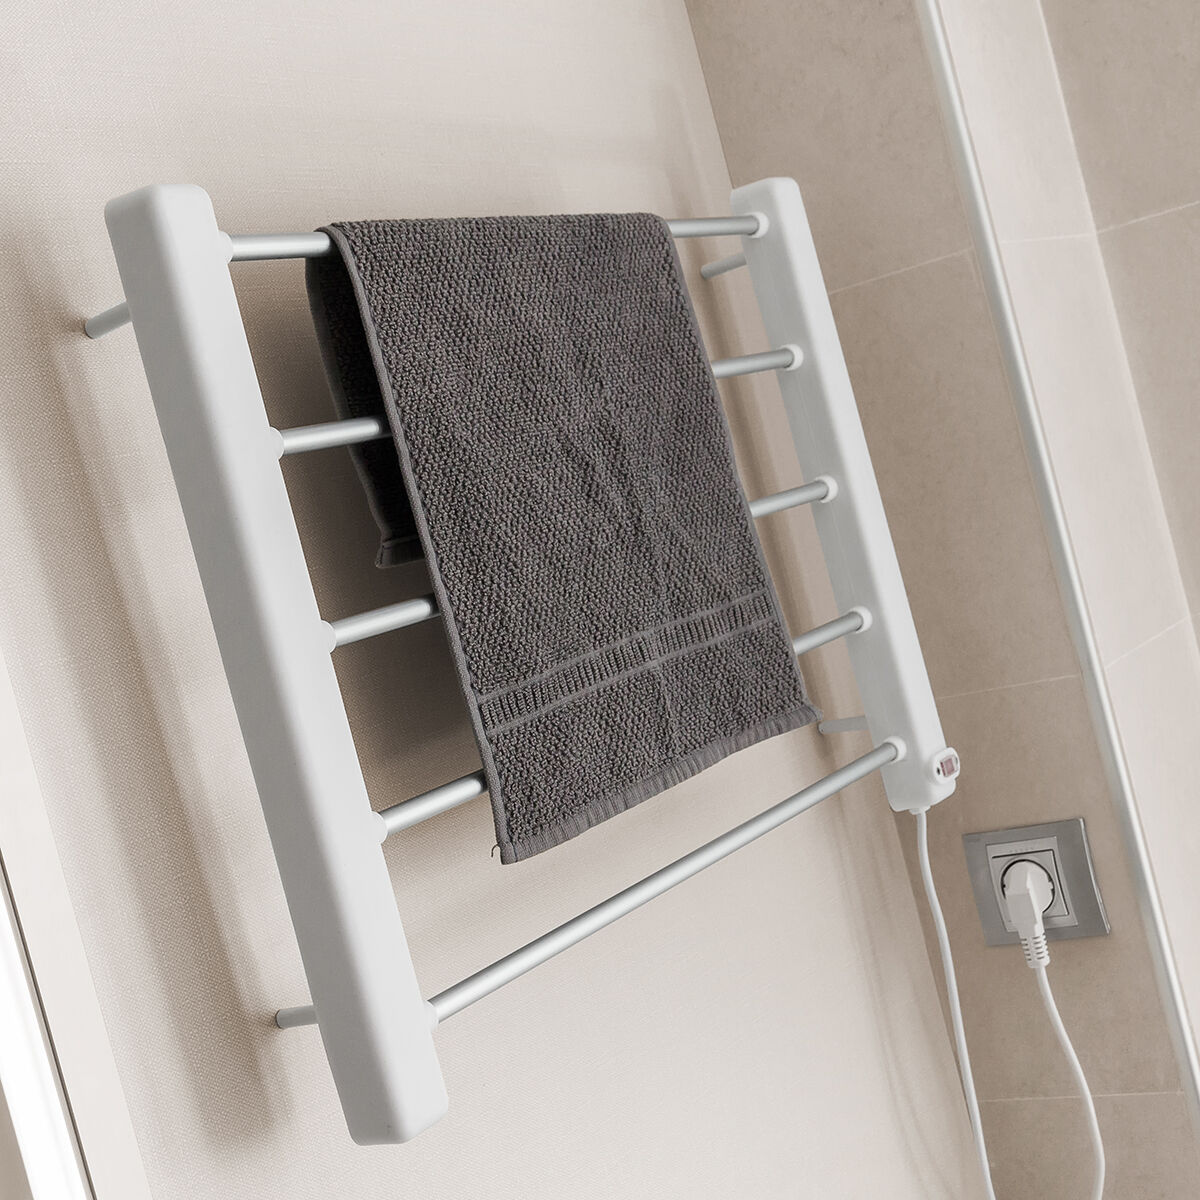 Electric Towel Rack to Hang on Wall InnovaGoods 5 Bars